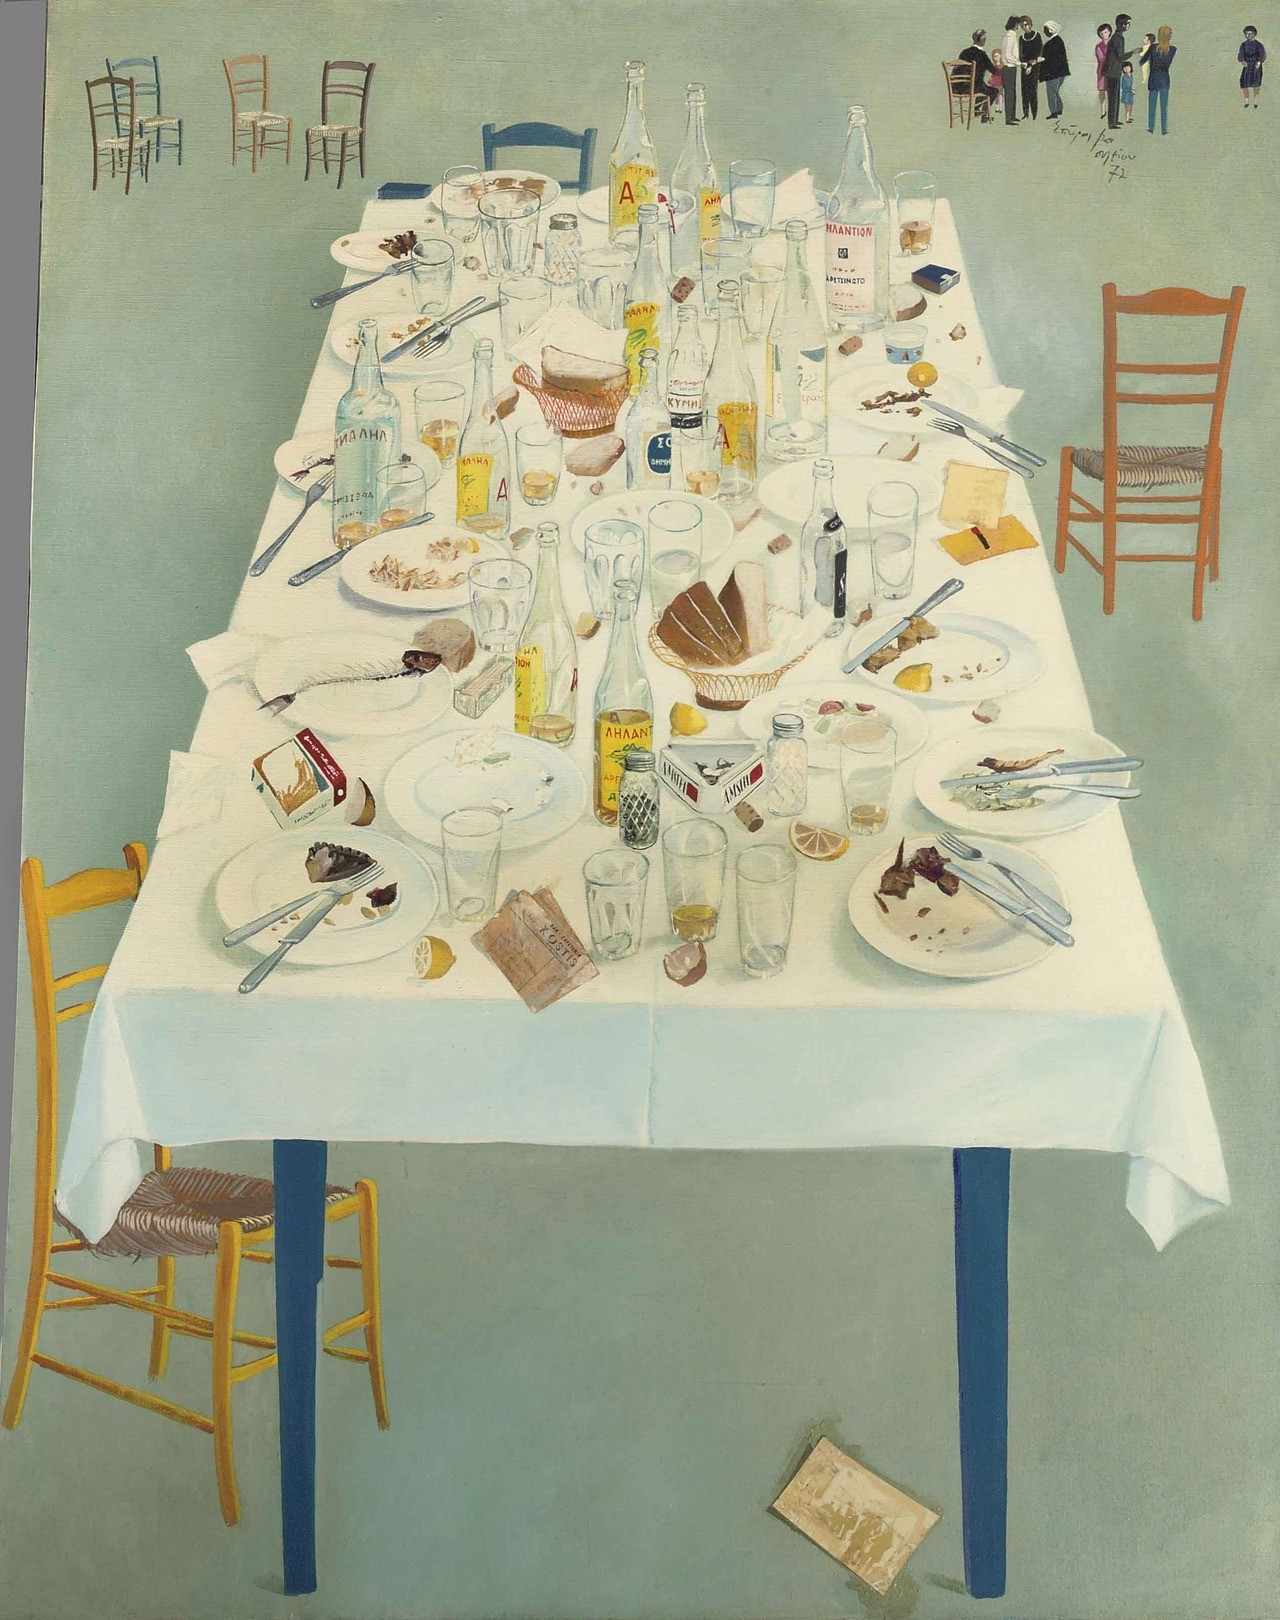 Spyros Vassiliou (Greek, 1902-1984), After dinner at Kostis ,1972. Oil and collage on canvas, 146 x 114.5 cm